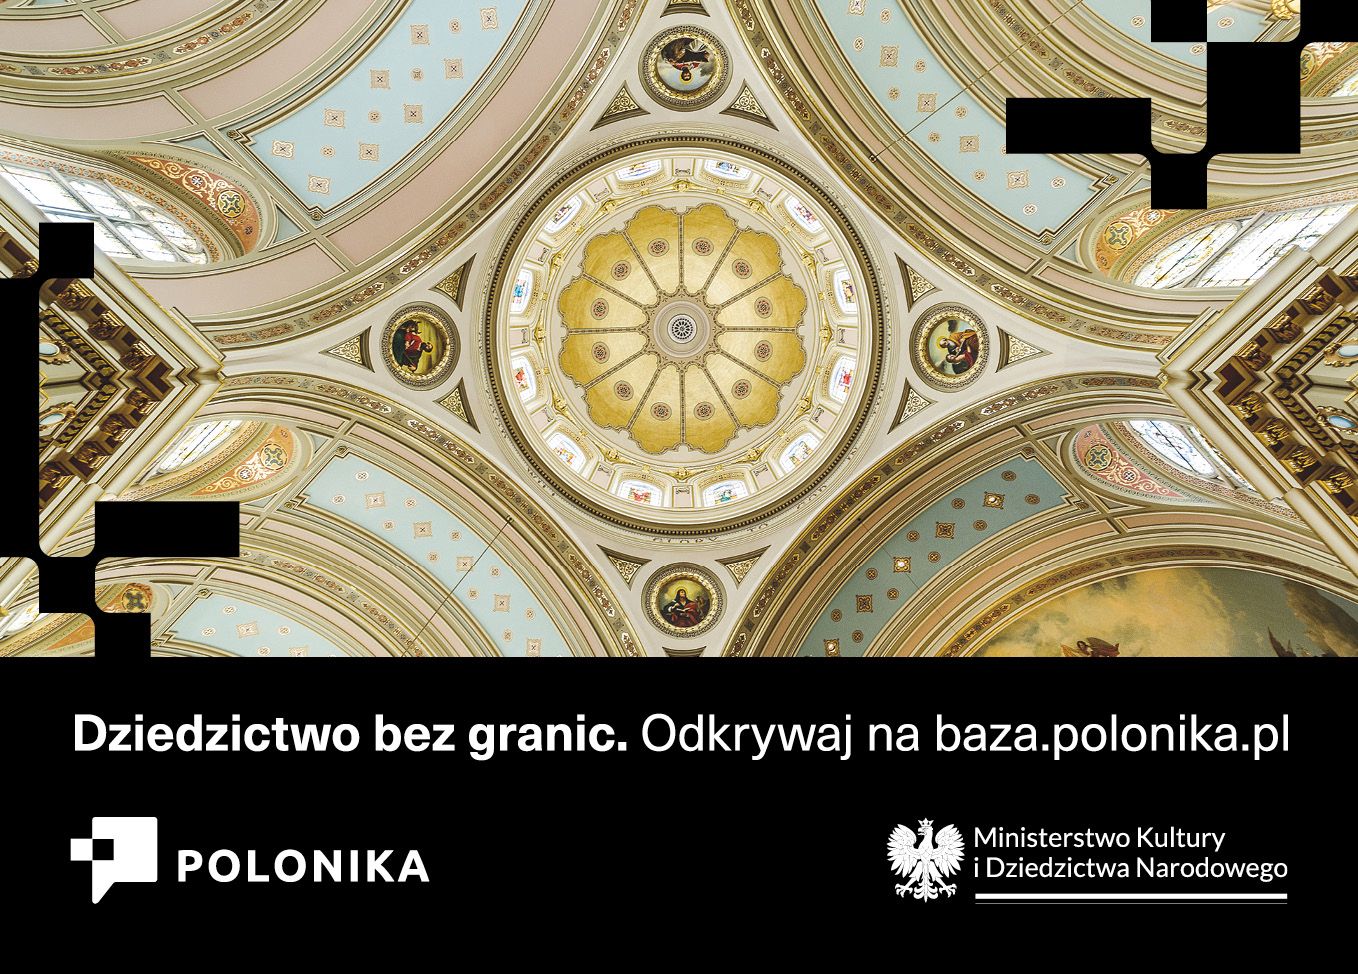 Ruszyła kampania informacyjna „Dziedzictwo bez granic” Instytutu Polonika